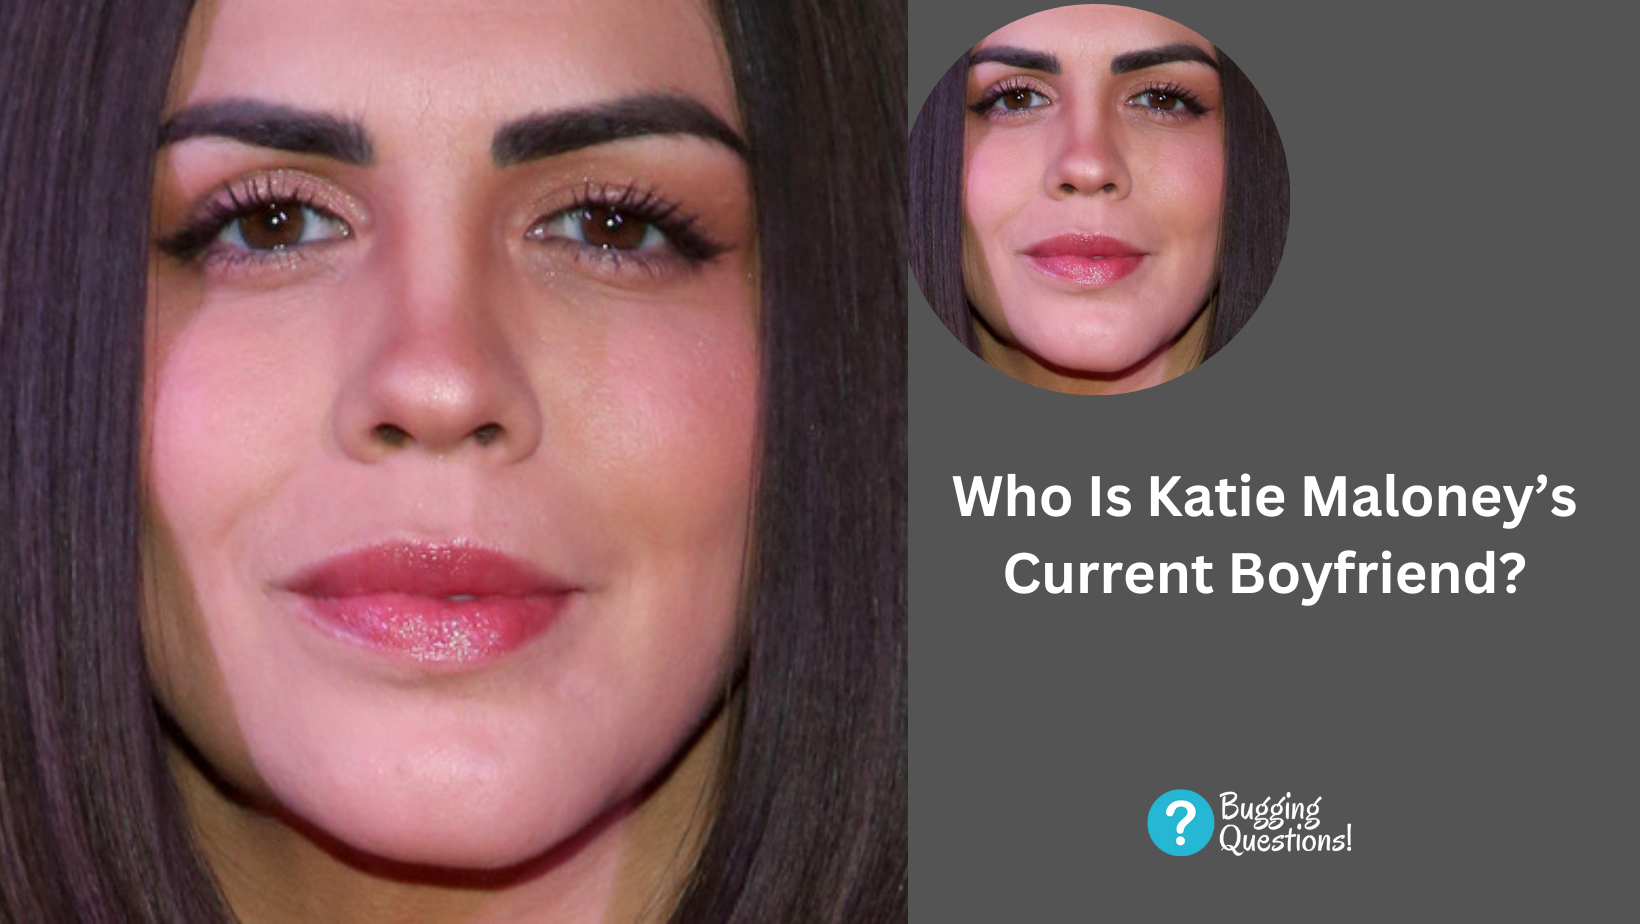 Who Is Katie Maloney’s Current Boyfriend?